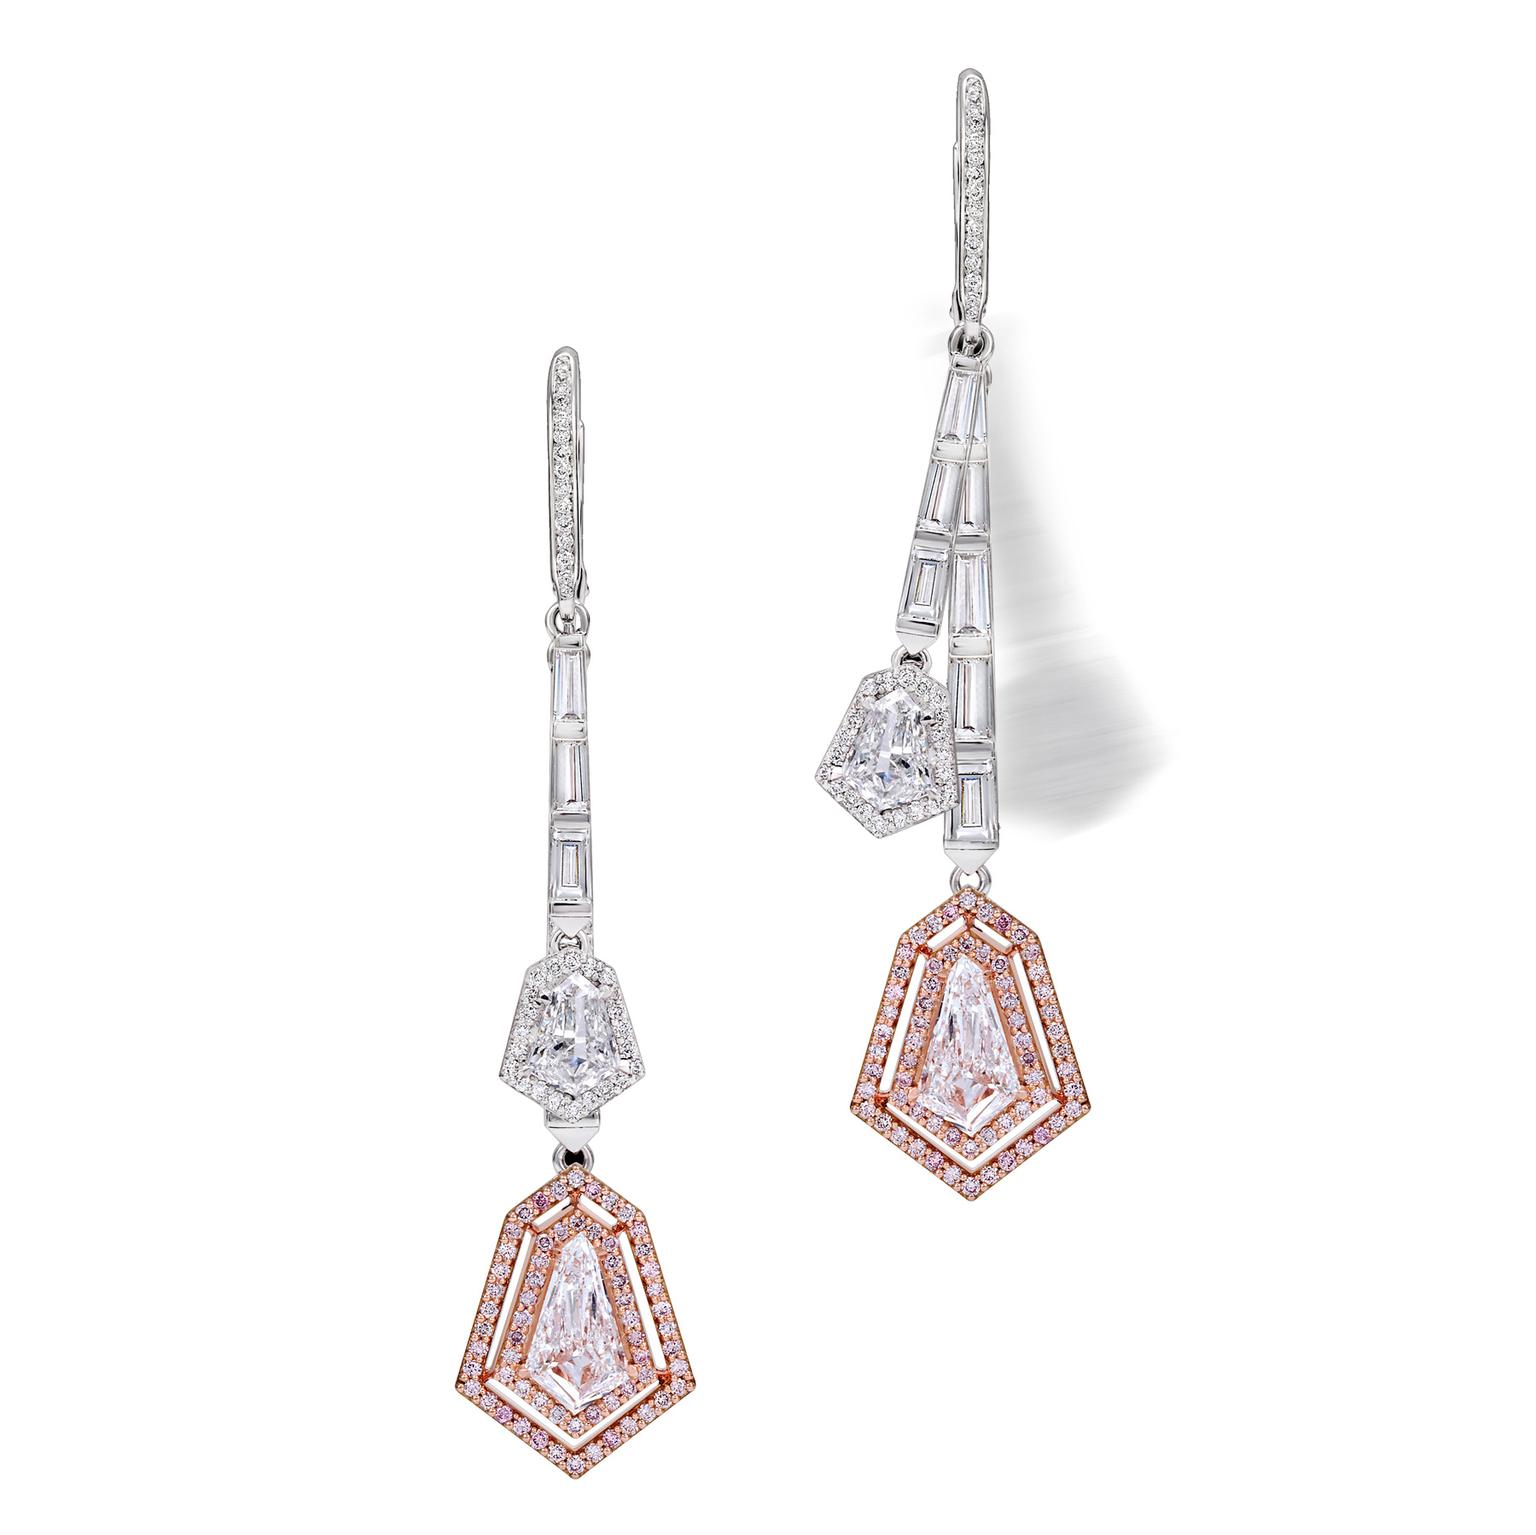 Avakian swinging diamond earrings